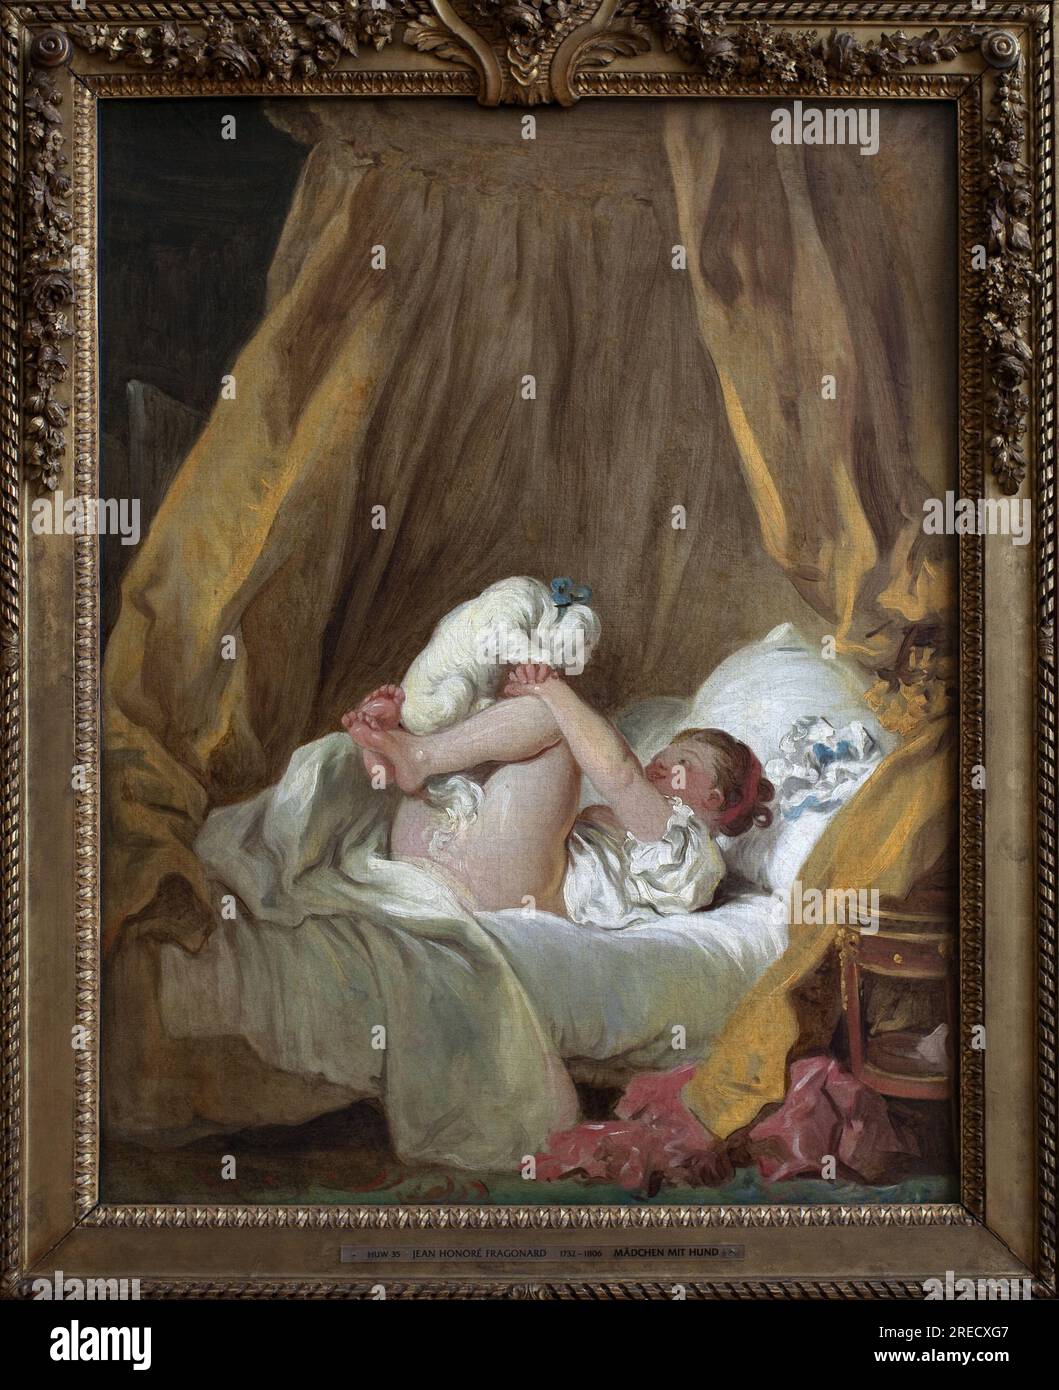 Jeune fille avec un chien. Peinture de Jean Honore Fragonard (1732-1806), huile sur toile, art francais 18e siecle. Ancienne pinacotheque de Munich (Allemagne). Stock Photo